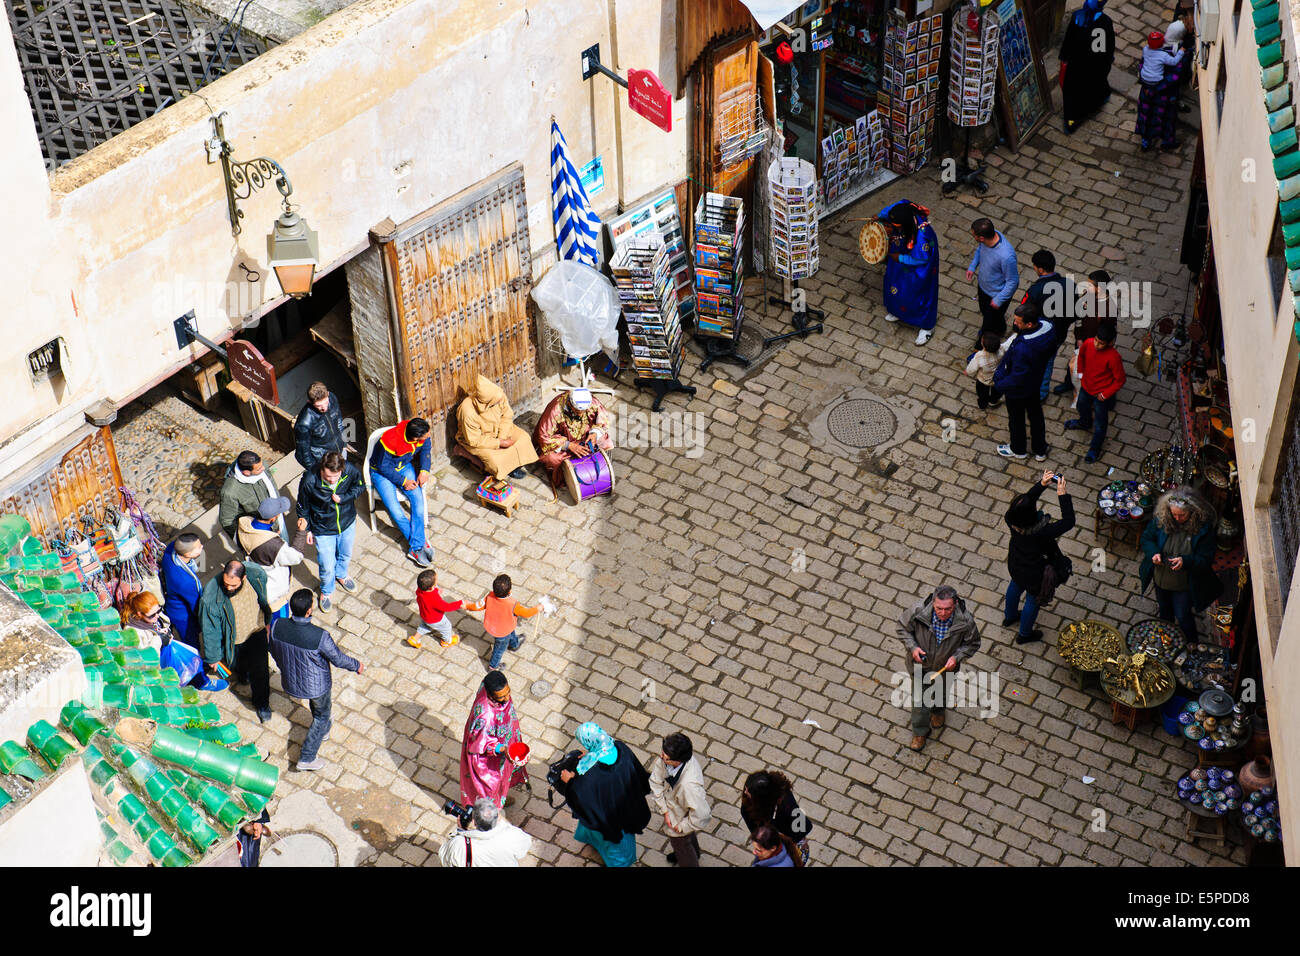 Fez,Marocco,un array di arts,artigianato tutte le cose Moroccon,tessitori,la seta,il rame,metallo, ceramica, negozi,Souk,Medina,Artigiani,mercati. Foto Stock